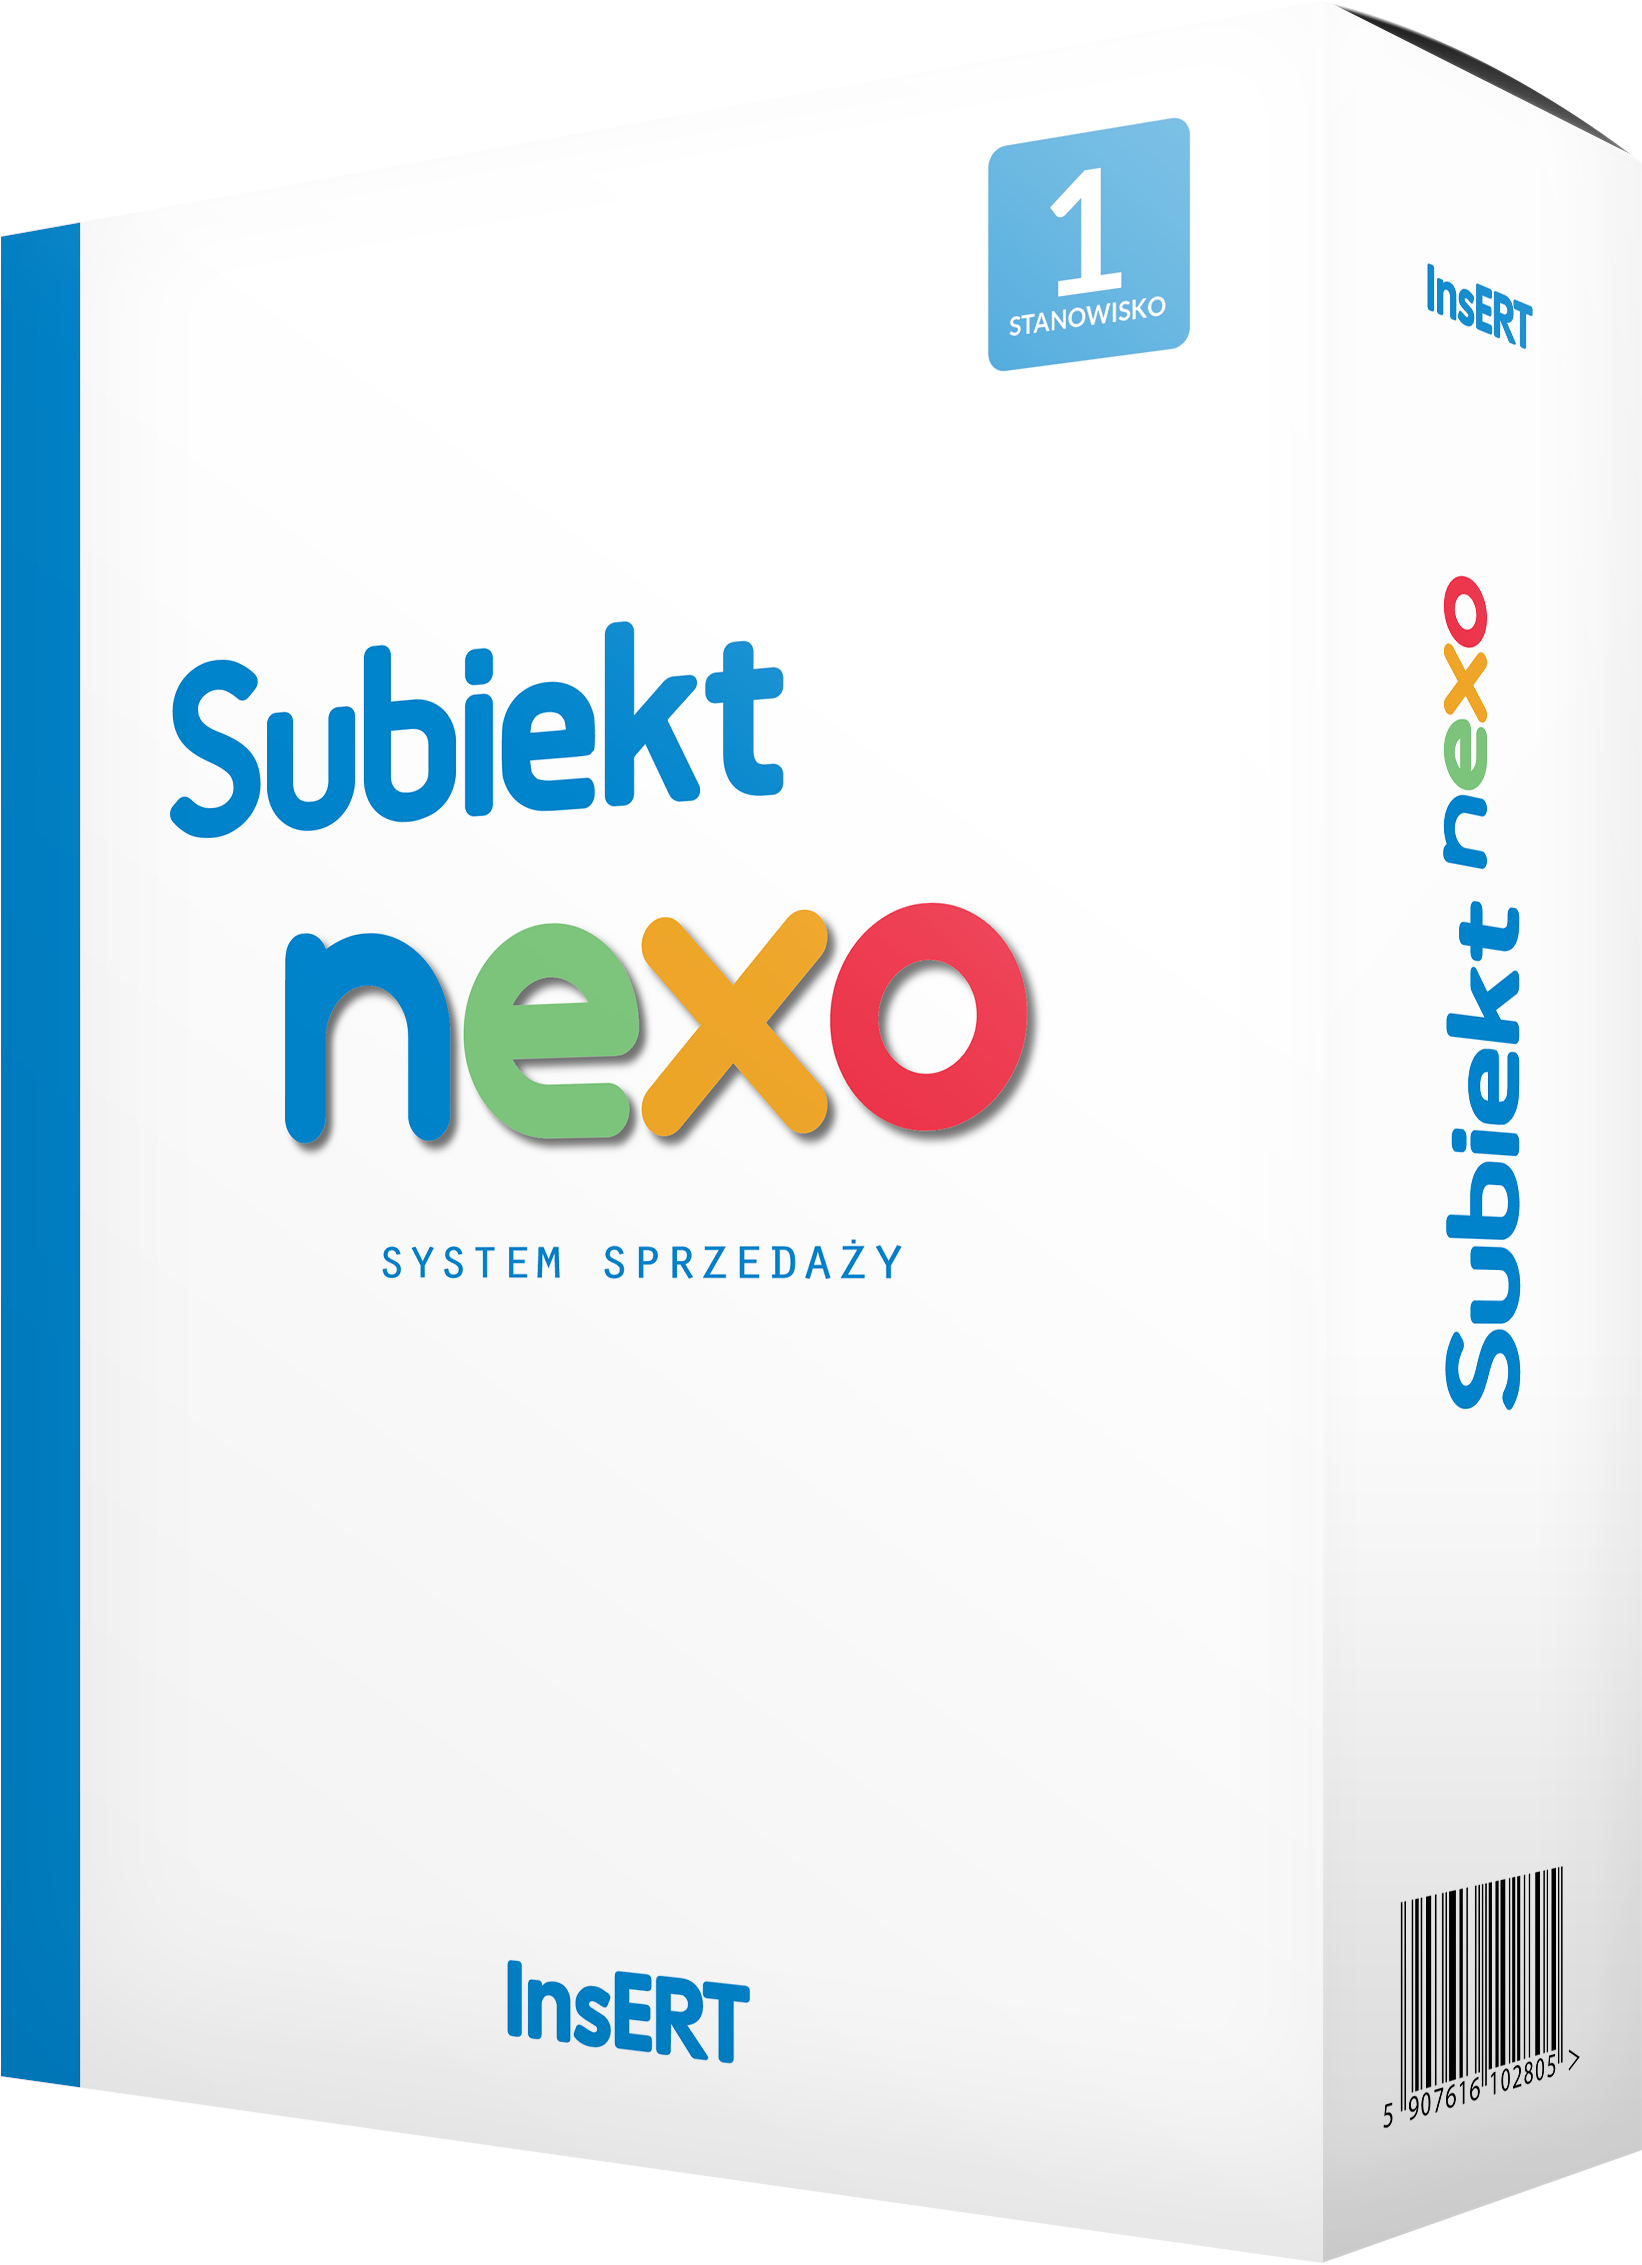 Subiekt_nexo1